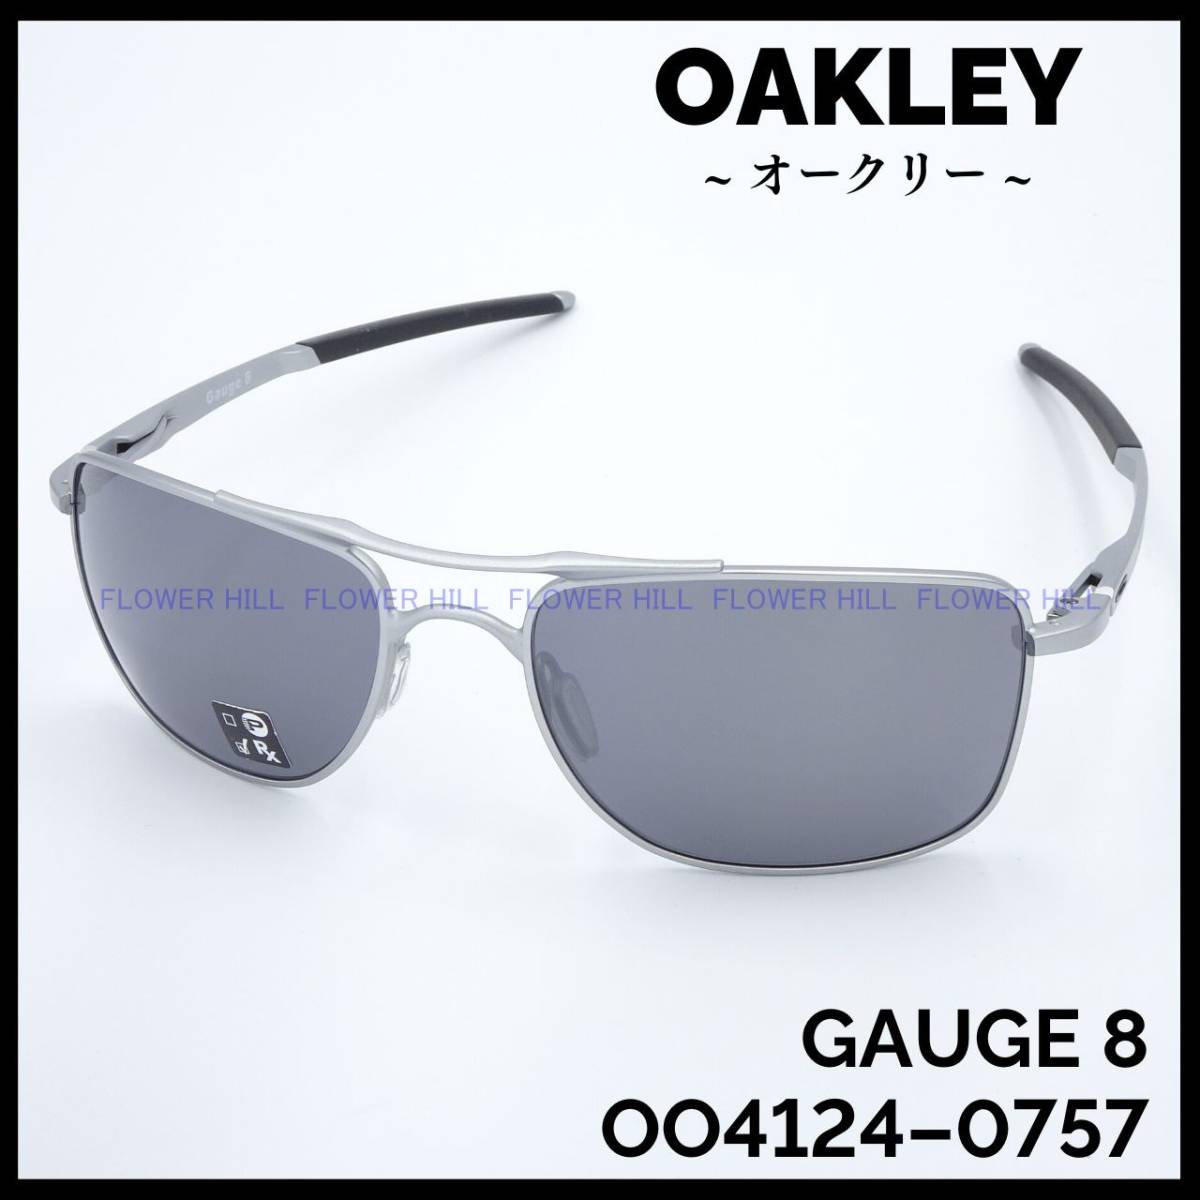 【新品・送料無料】 オークリー OAKLEY サングラス メタルフレーム GAUGE8 Mサイズ BLACK IRIDIUM OO4124-0757 メンズ レディース